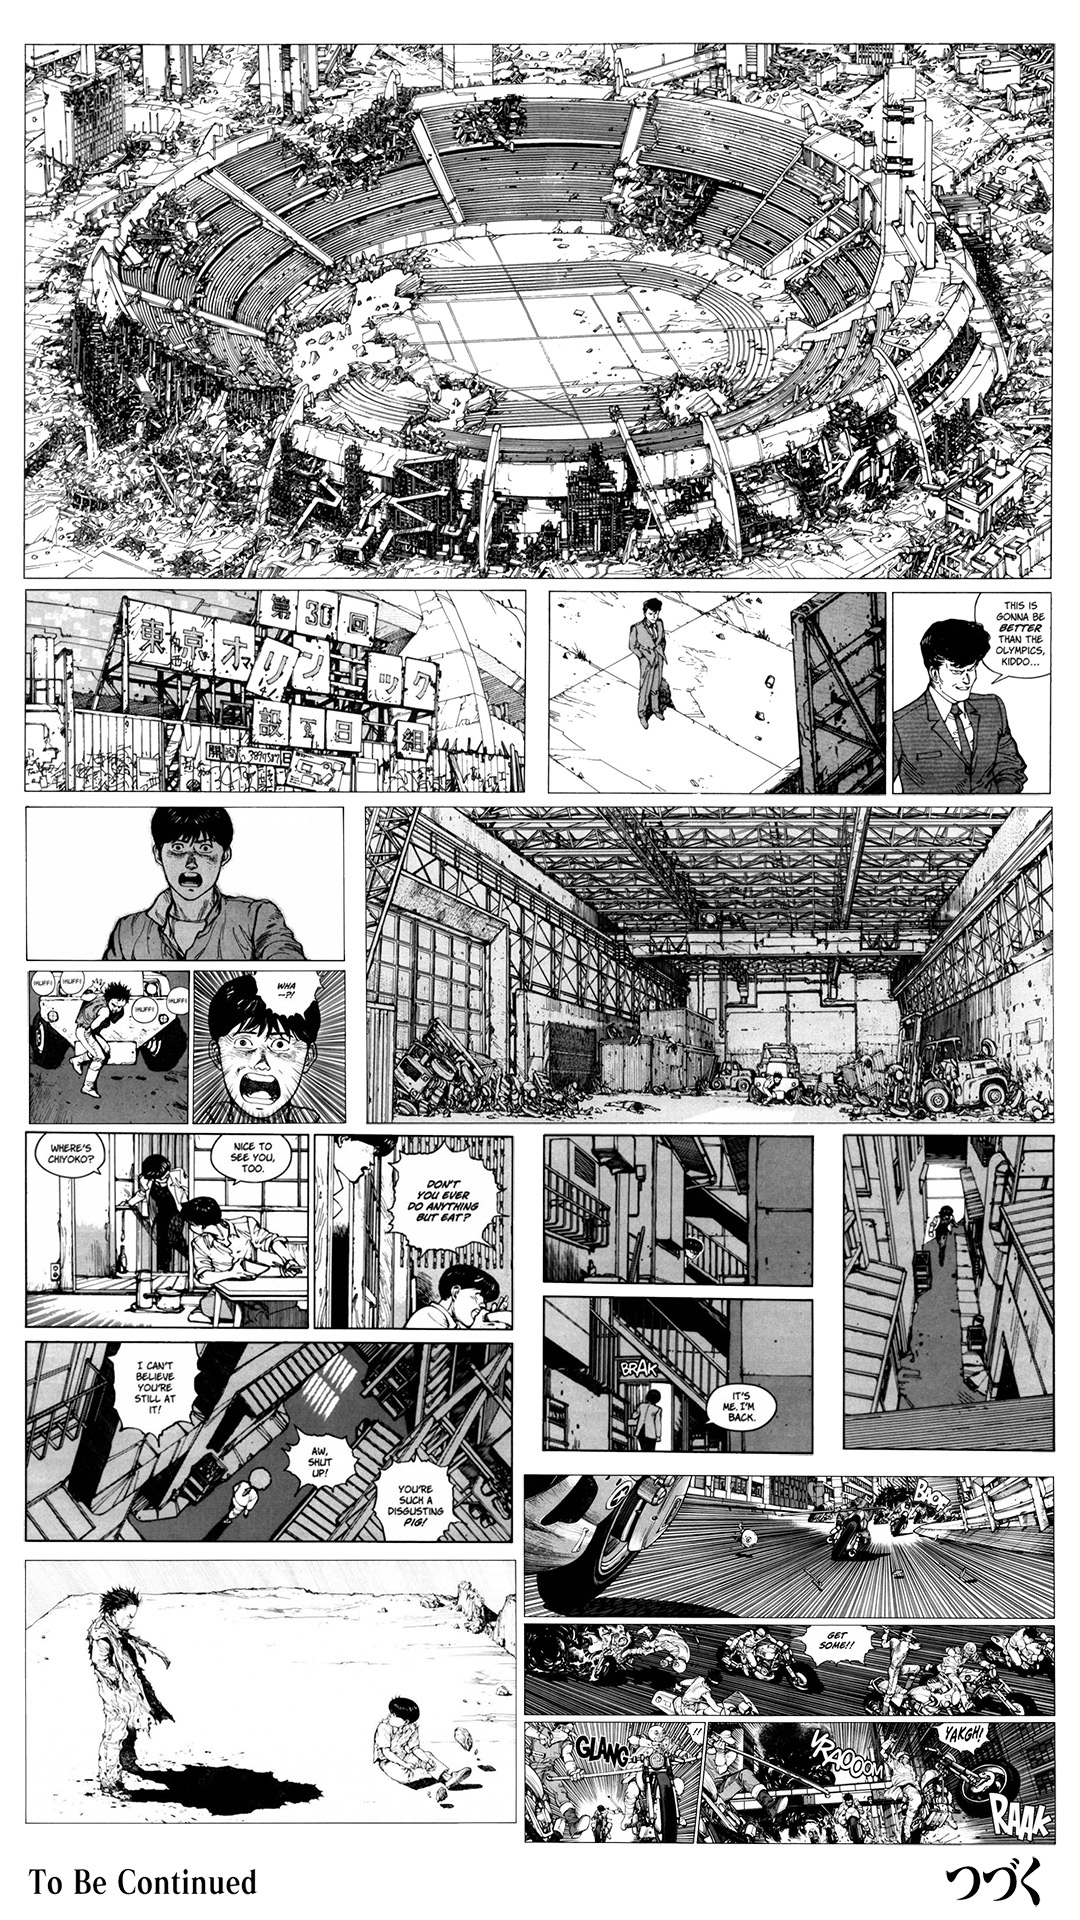 Akira Anime Manga Monochrome Monochrome Translated Speech Bubble 1080x1920